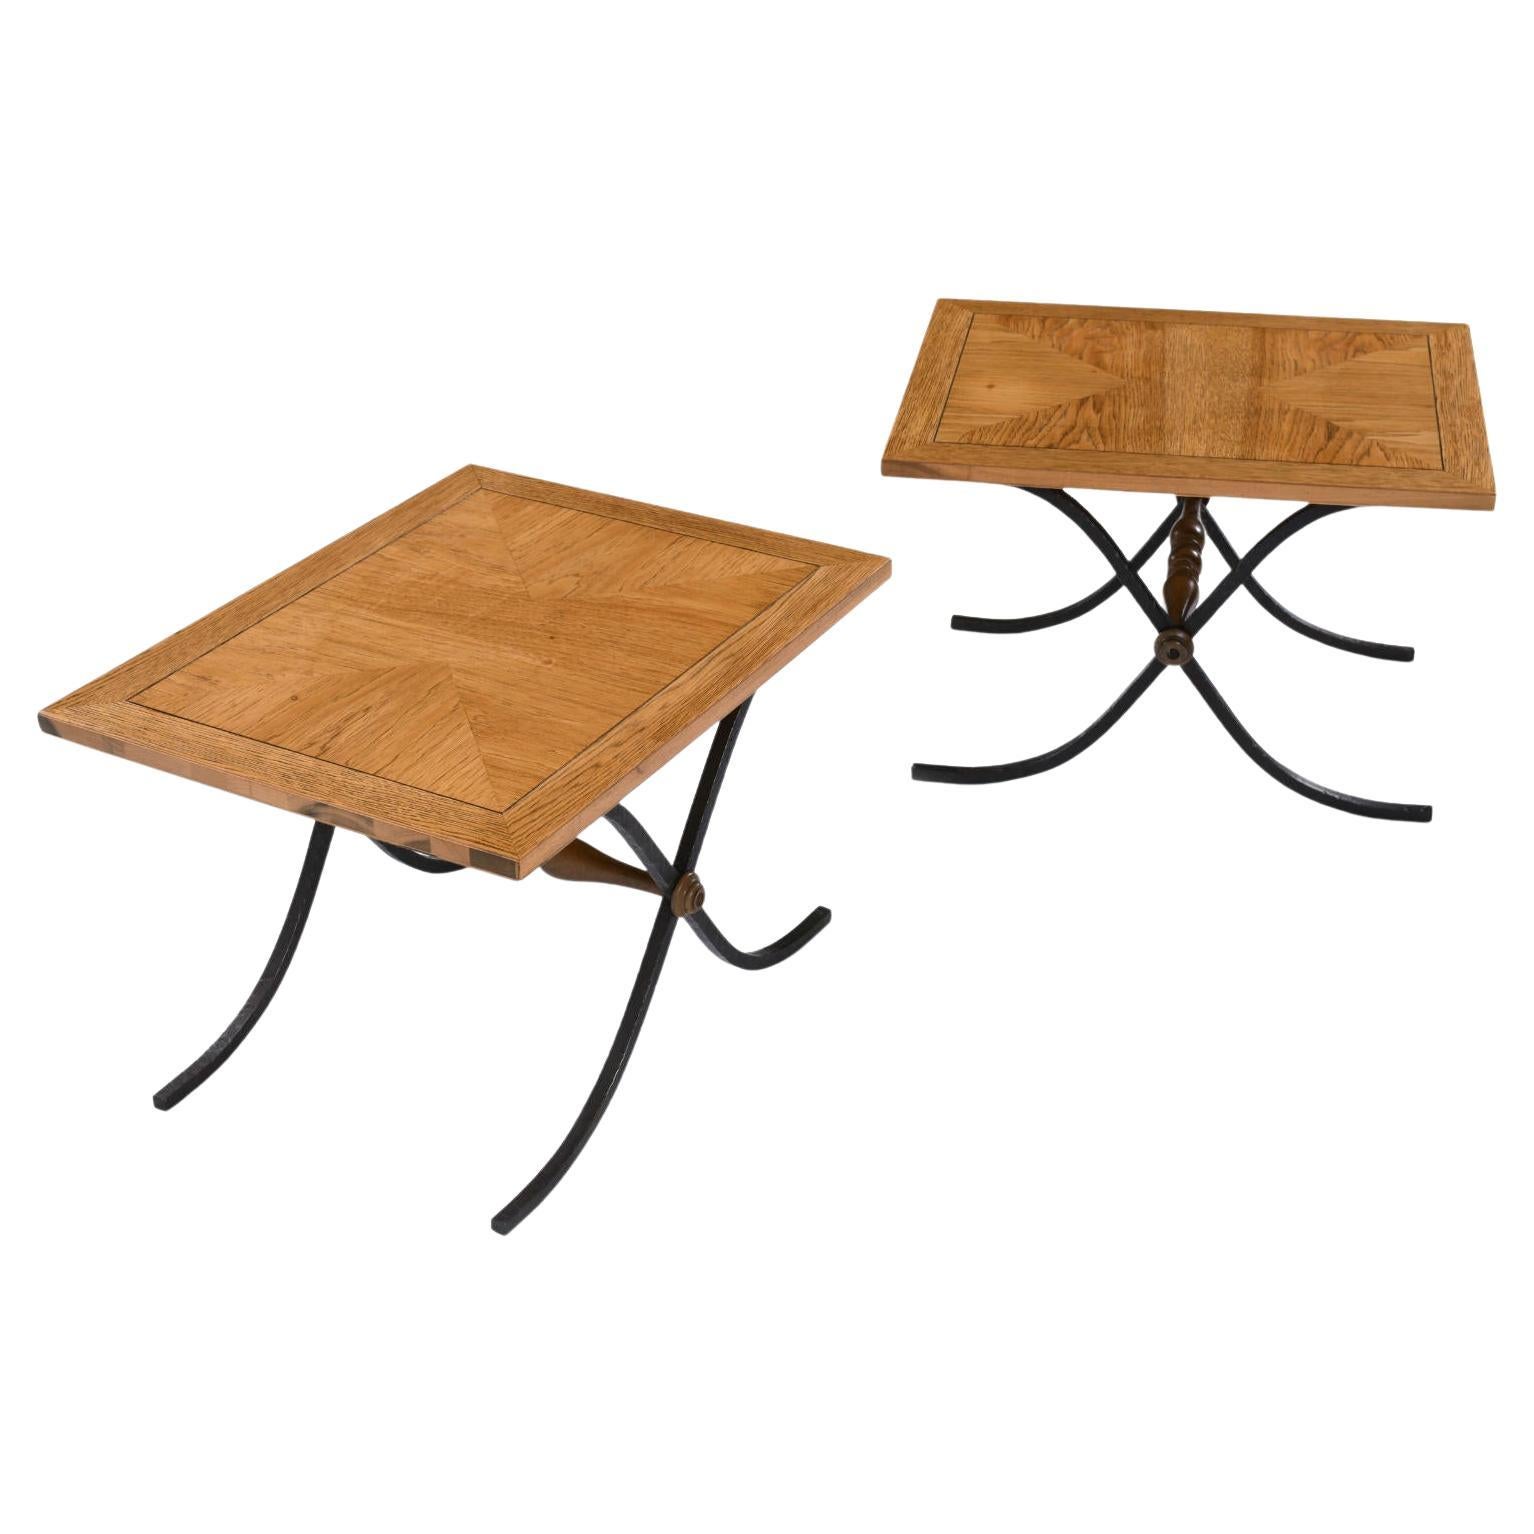 Pair Parquet Oak Petite Side Tables with Iron x Base Sabre Legs For Sale